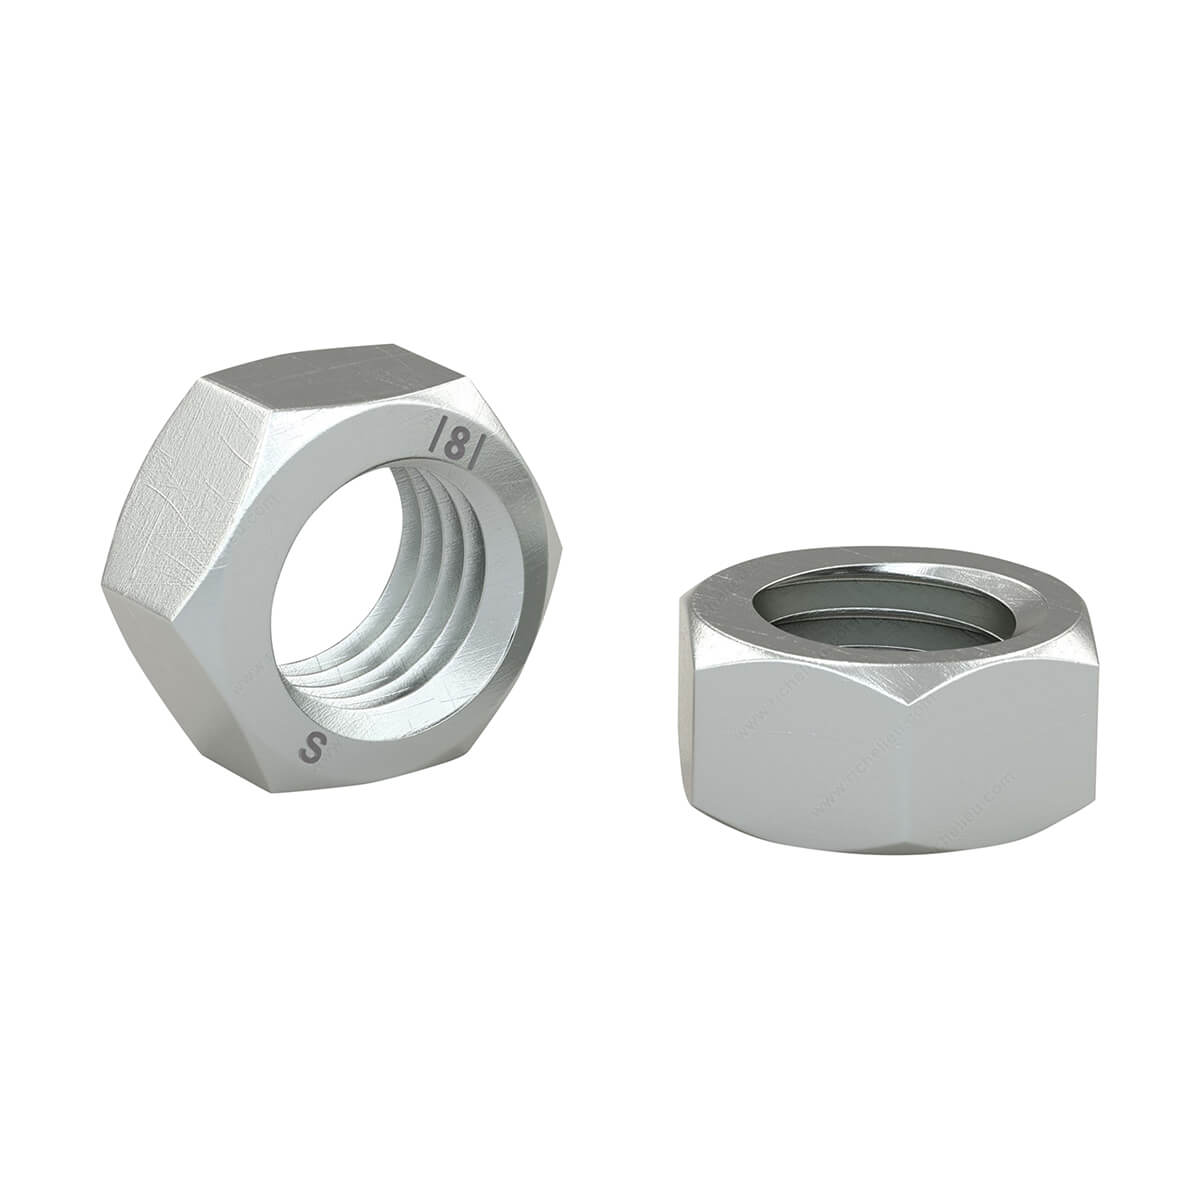 Hexagonal Nut - Zinc Plated - M4 X 0.7 Pitch - 8 / Pack